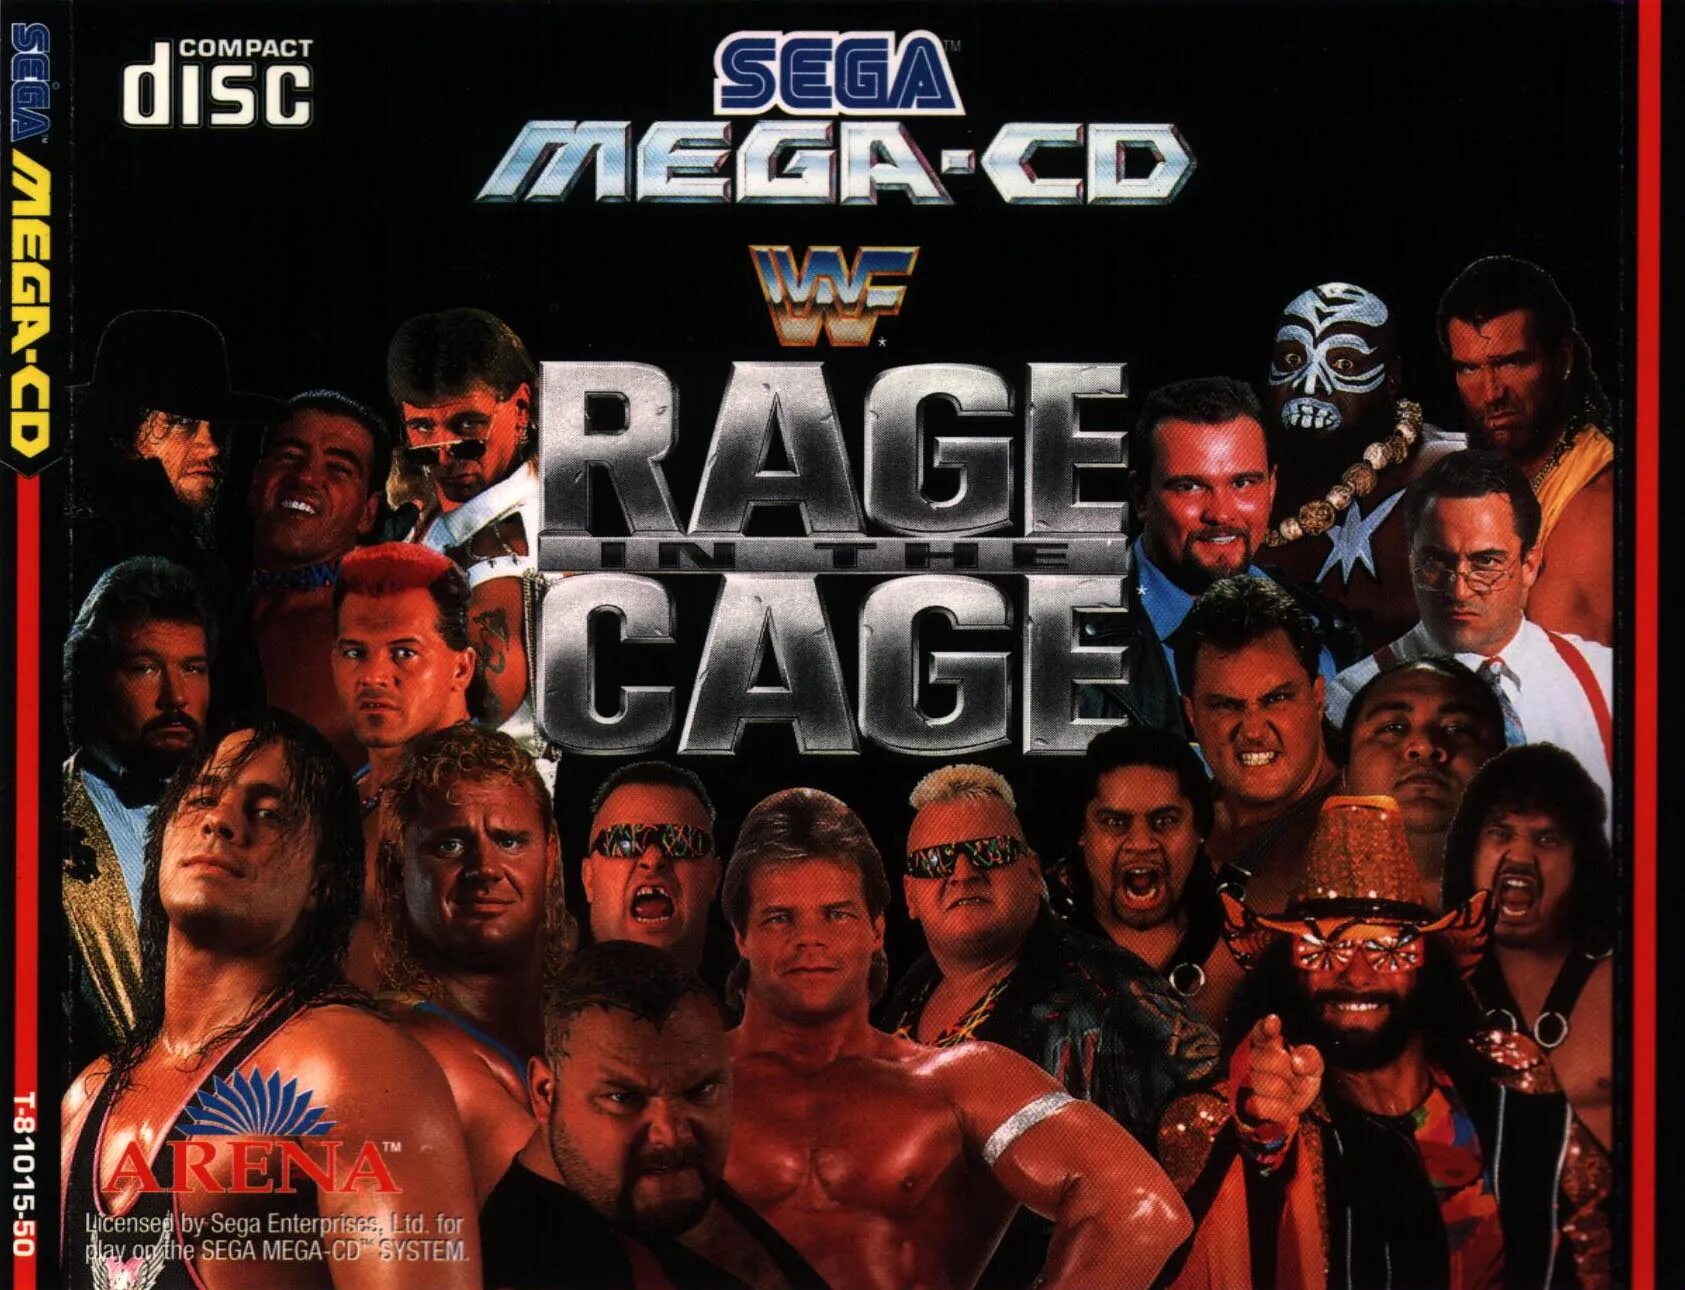 Рестлинг на Sega Mega-CD. Сега реслинг картридж. WWF Sega. Реслинг сега персонажи.